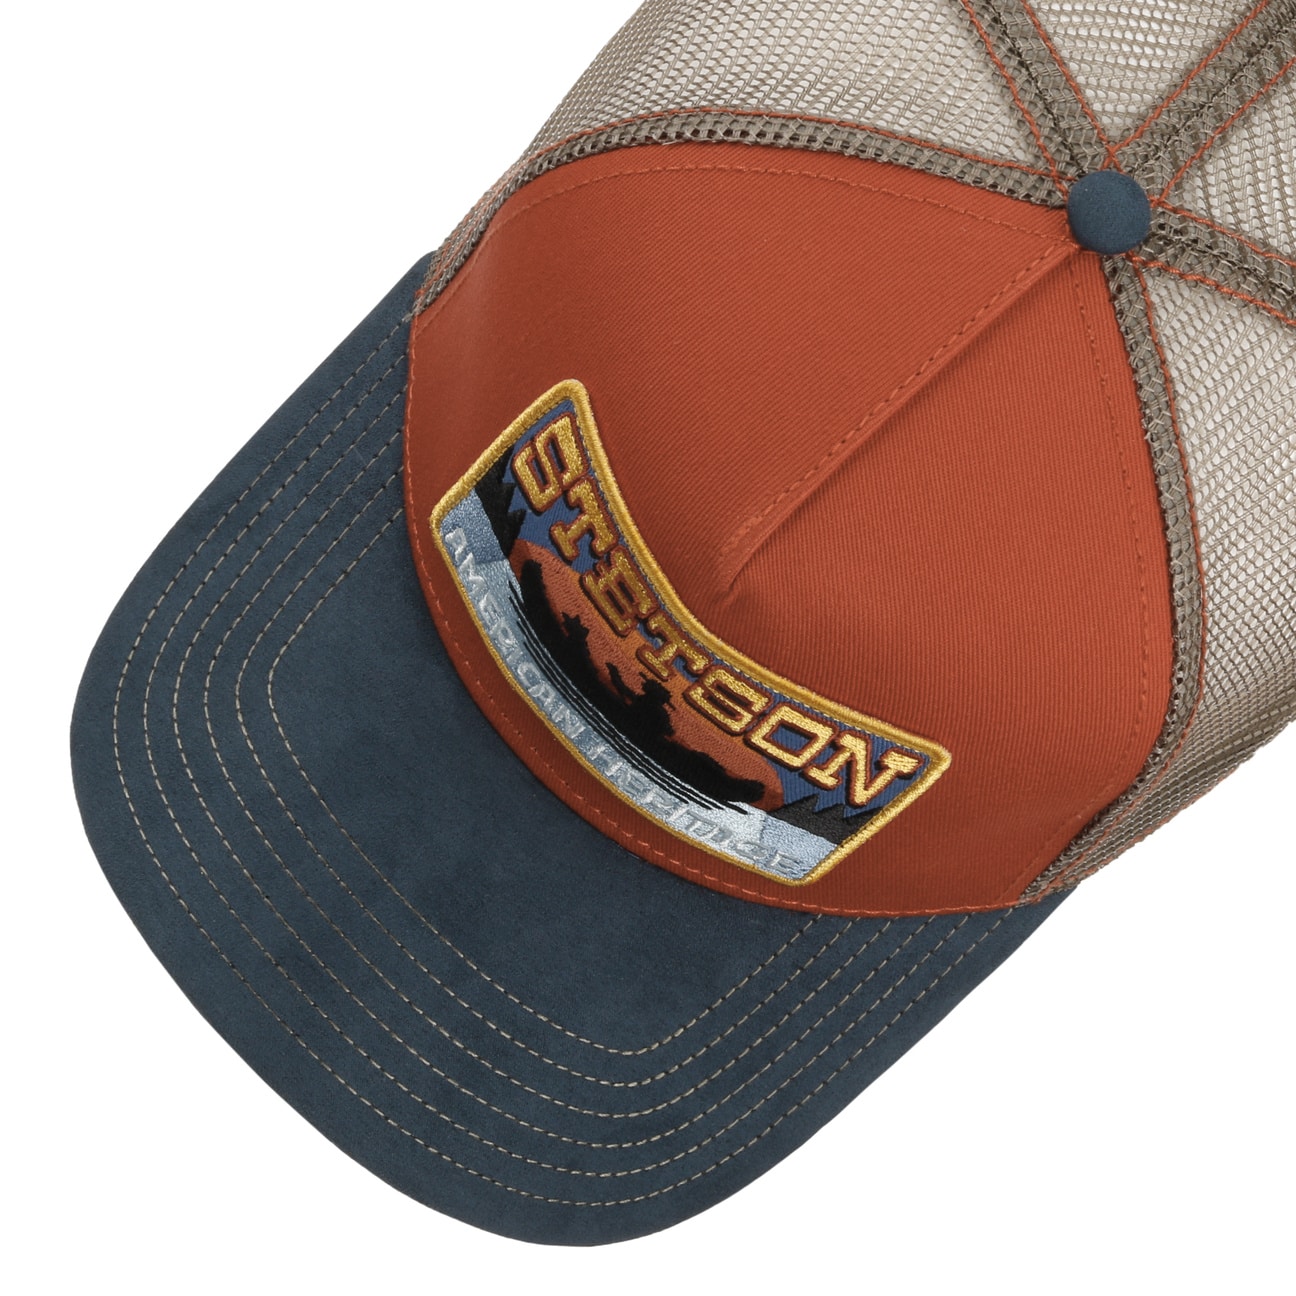 Casquette Trucker Endurance by Stetson --> Chapeaux, casquettes & bonnets  en ligne ▷